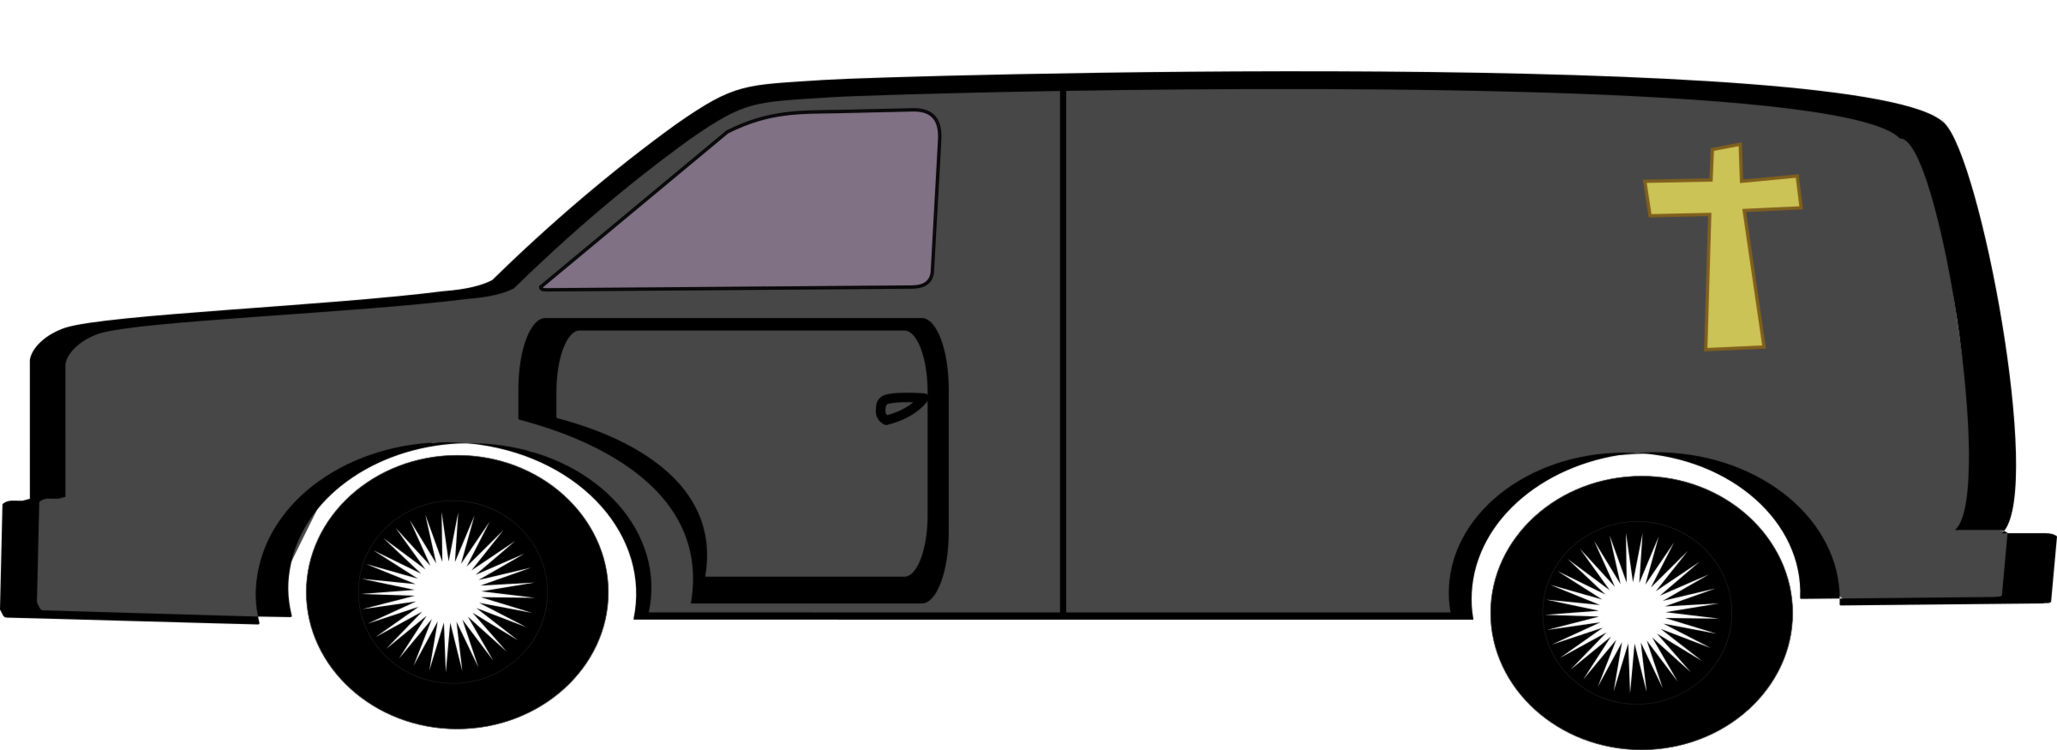 Wheel,Vehicle Door,Compact Car